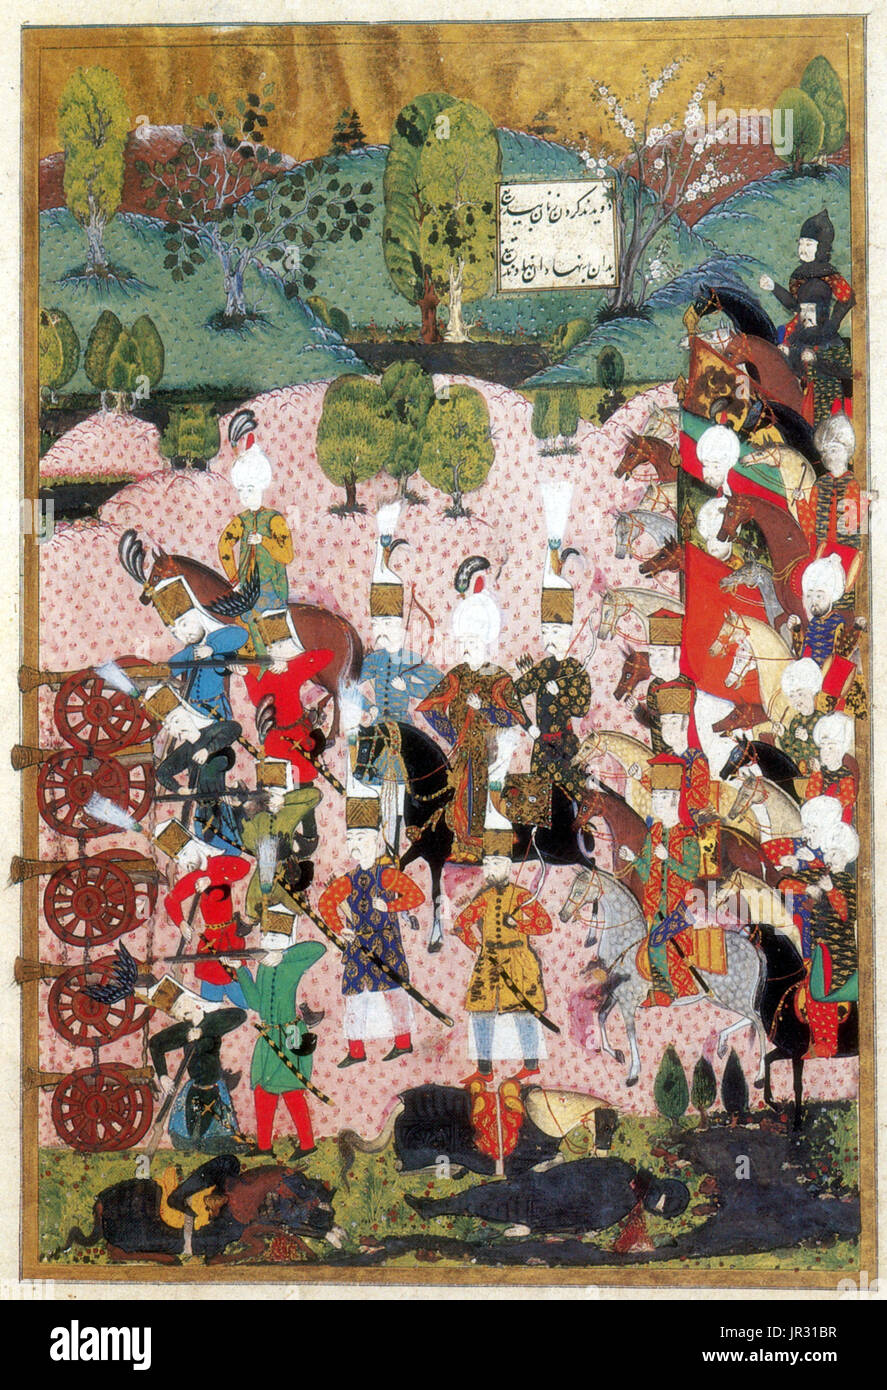 La bataille de Mohács était l'un des plus important dans l'histoire de l'Europe centrale des batailles. Il a été battu le 29 août 1526 près de Mohács, royaume de Hongrie, entre les forces du royaume de Hongrie, dirigé par Louis II, et ceux de l'Empire Ottoman, dirigé par Soliman le Magnifique. La Hongrie avait un coûteux, mais obsolètes, de l'armée lourdement tributaires des chevaliers blindés blindés sur les chevaux. Le front hongrois était constituée de deux lignes, la première avec un centre d'infanterie et d'artillerie de mercenaires et la majorité de la cavalerie sur les deux flancs. La deuxième ligne était un mélange de Levy et d'infanterie cavalerie. Banque D'Images